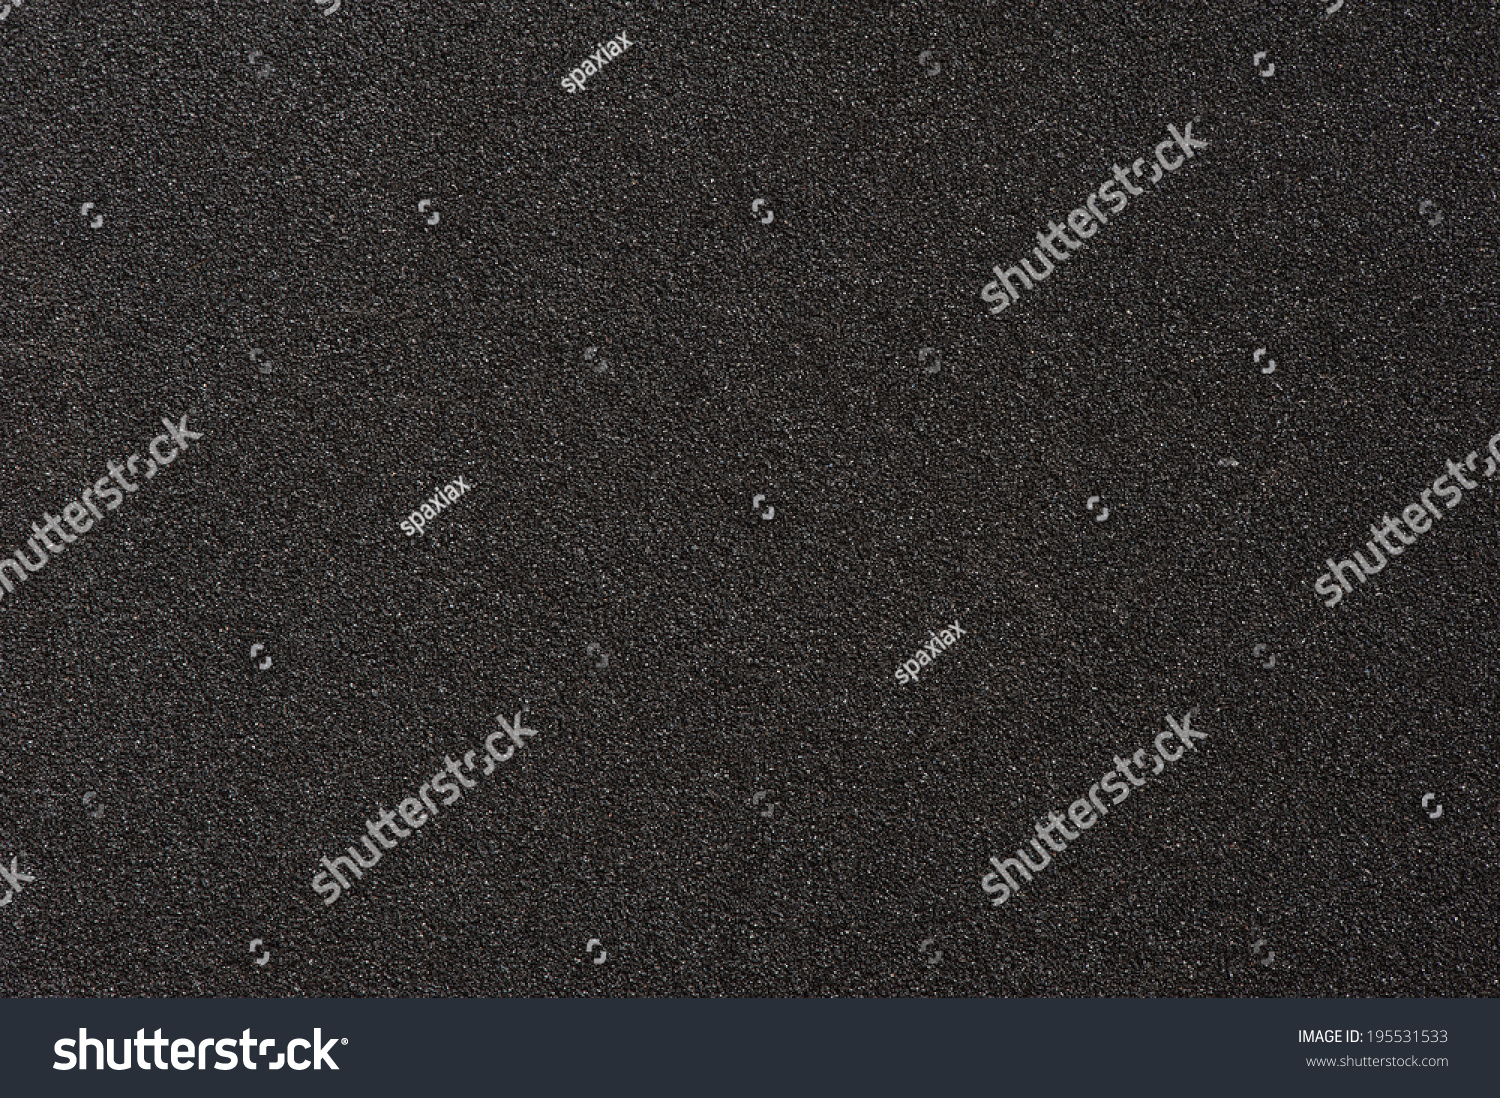 black asphalt texture #195531533